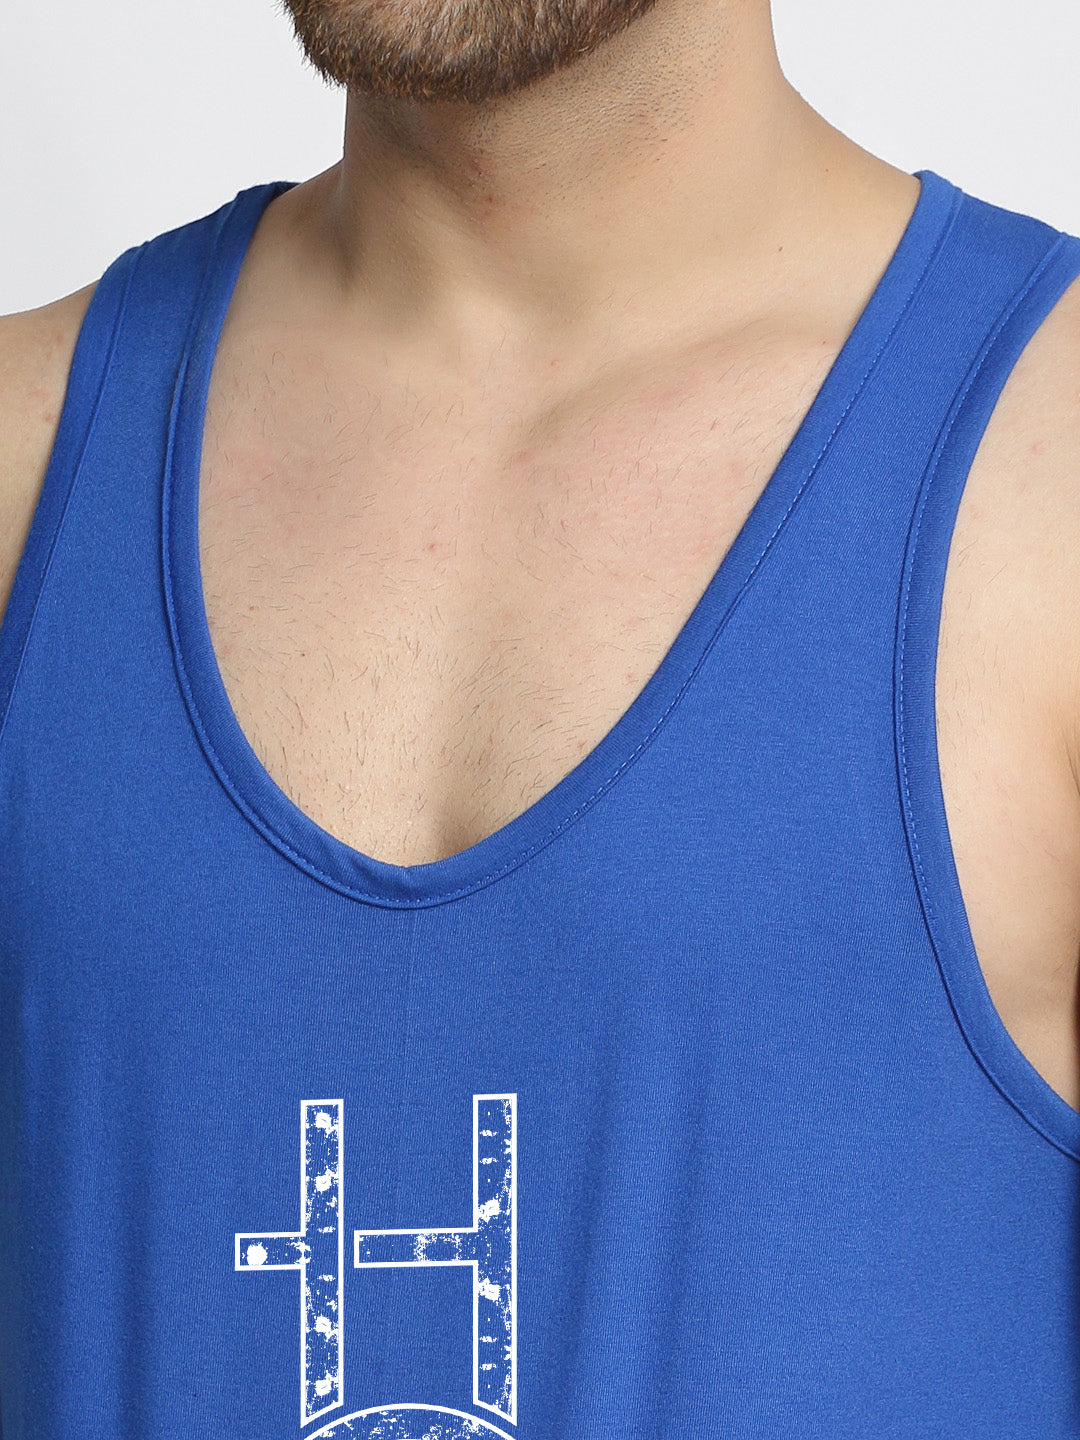 New Hope Printed Innerwear Gym Vest - Friskers